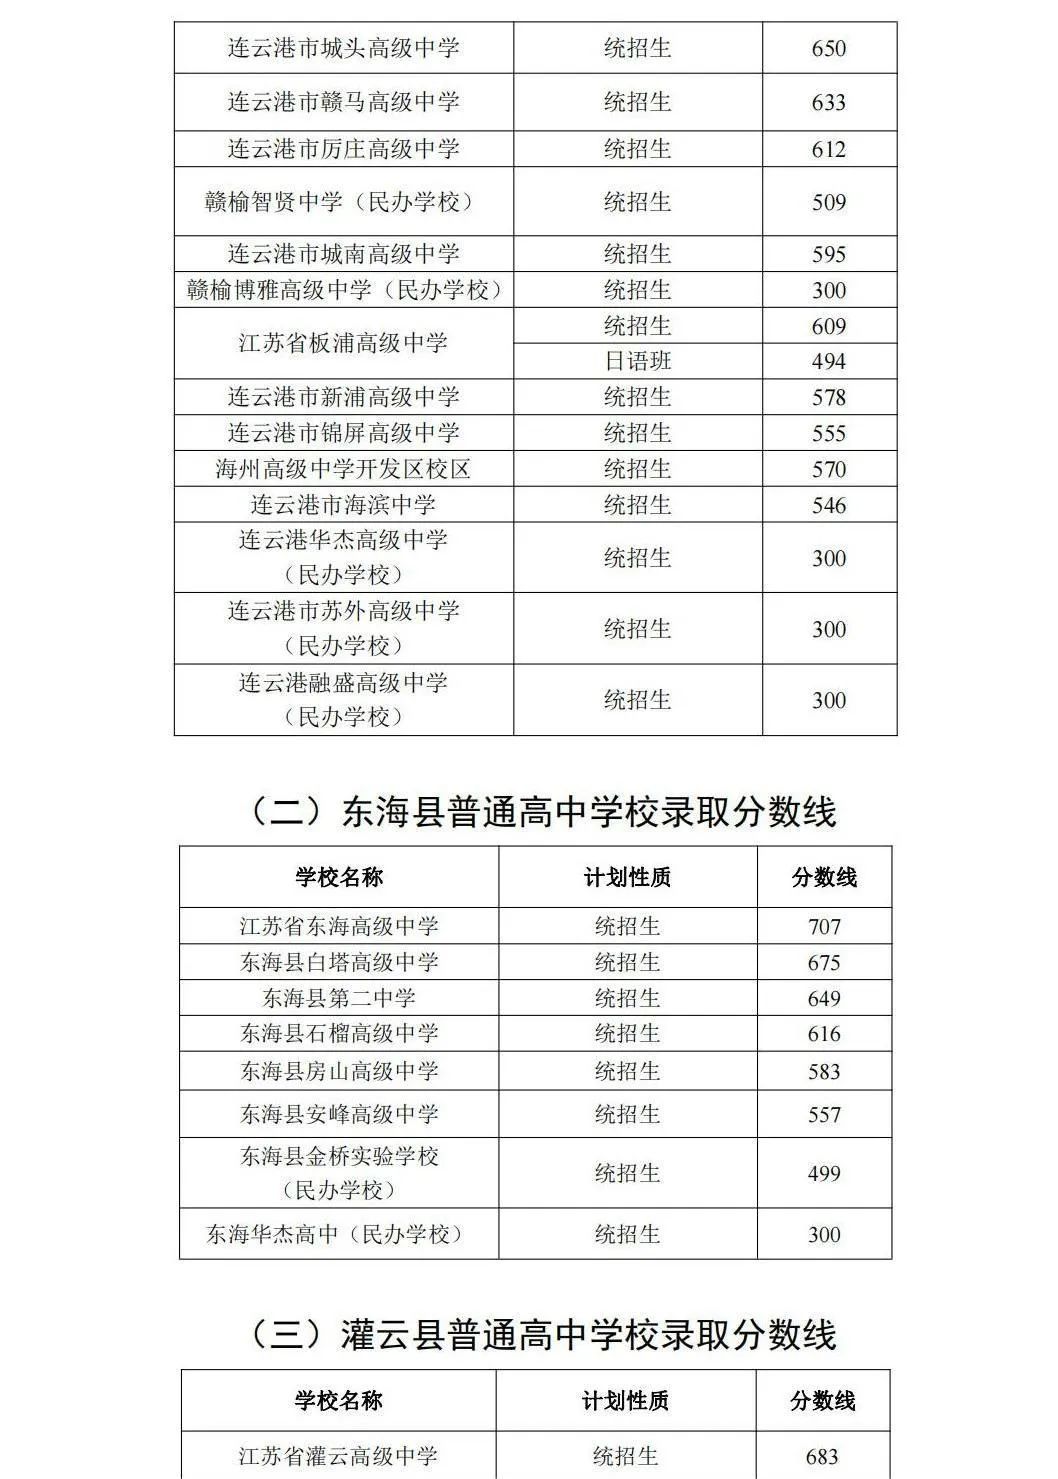 2023年连云港中考录取分数线,连云港市各高中录取分数线一览表